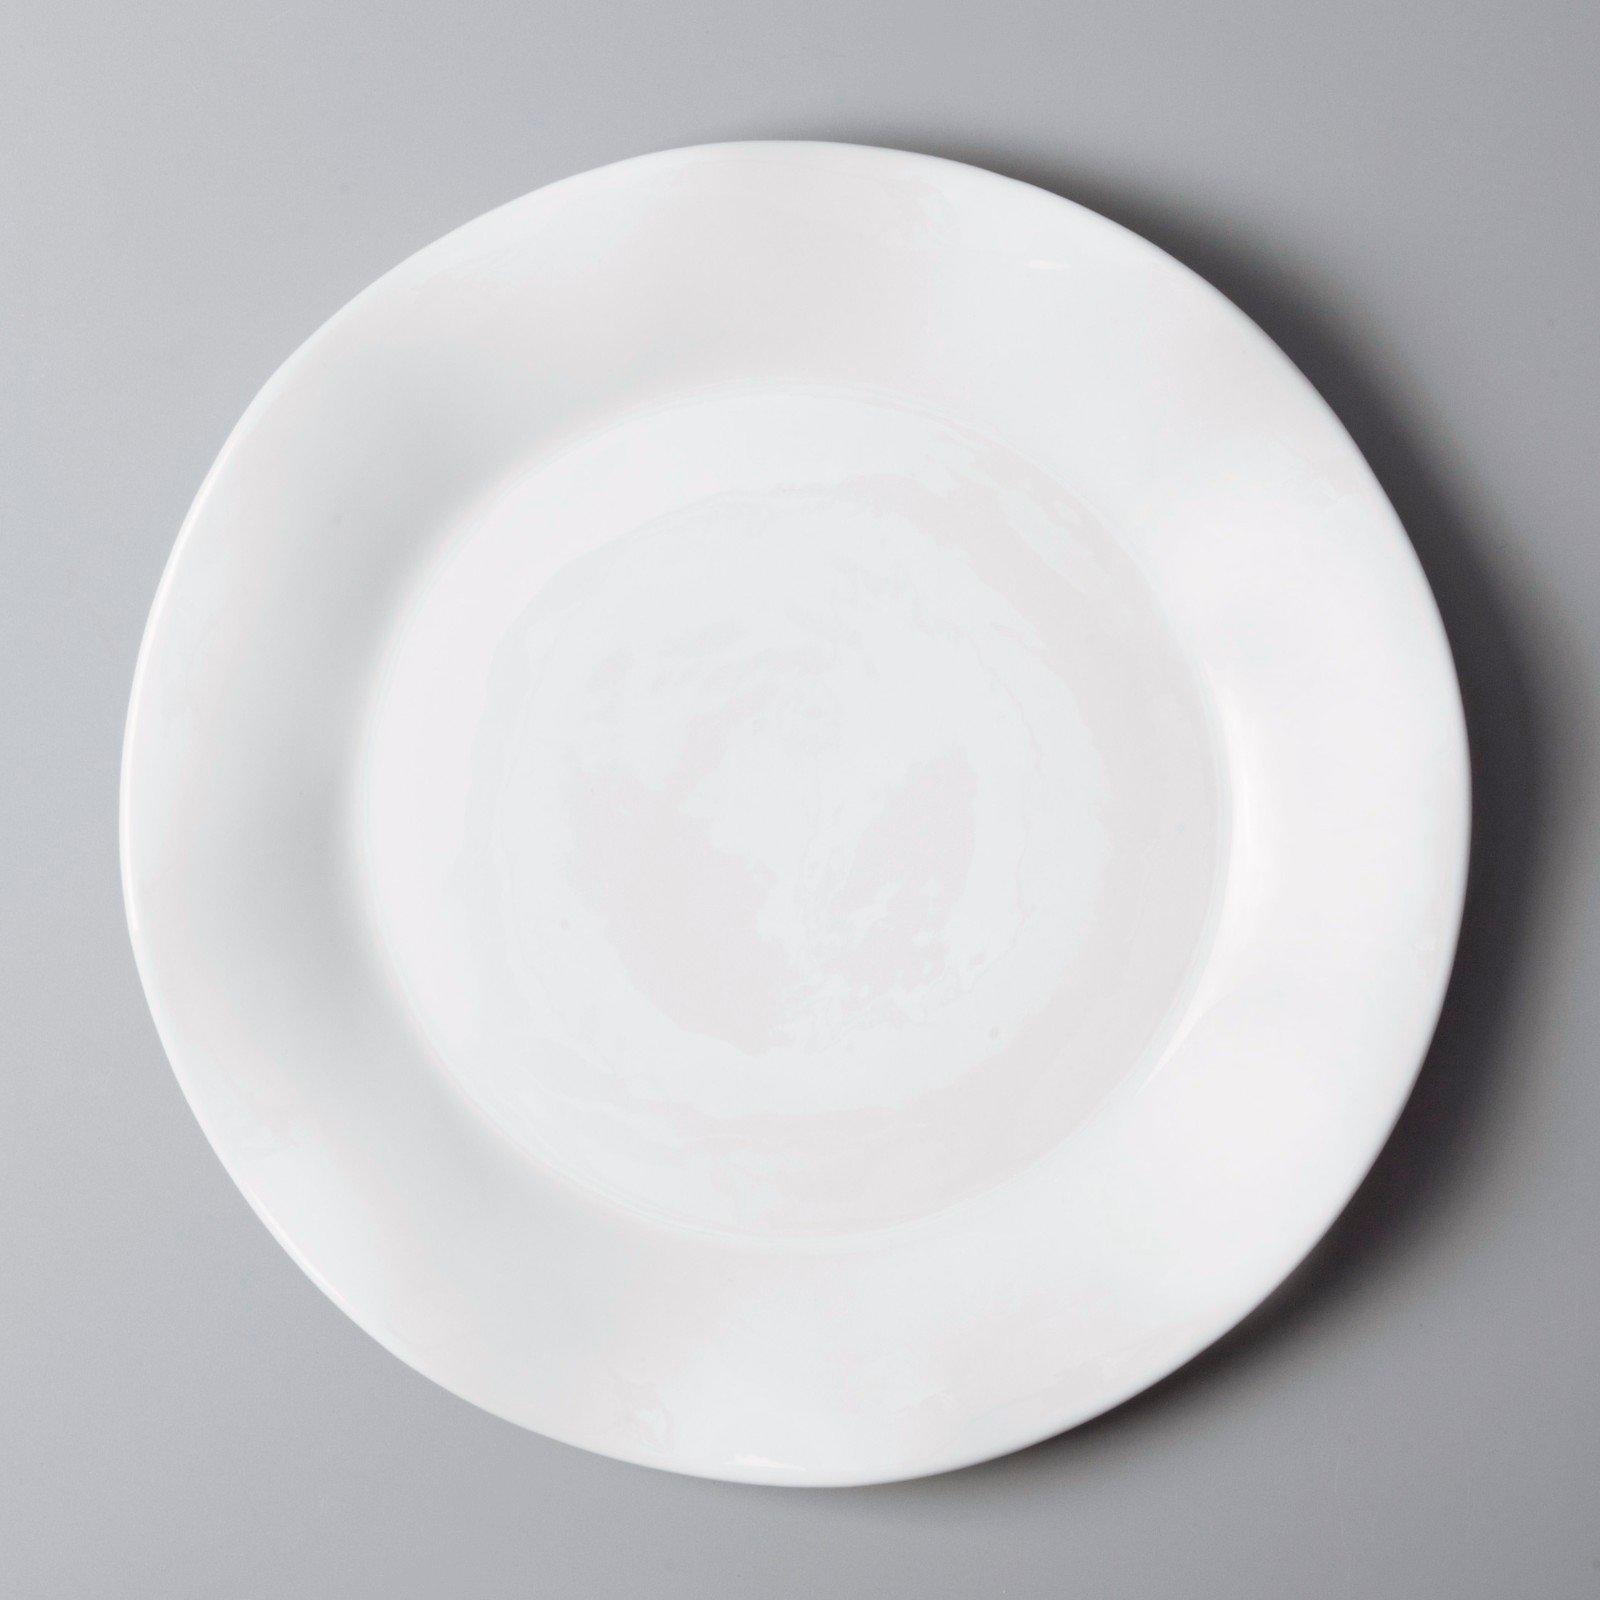 rim restaurant porcelain dinnerware from China for dinner Two Eight-2